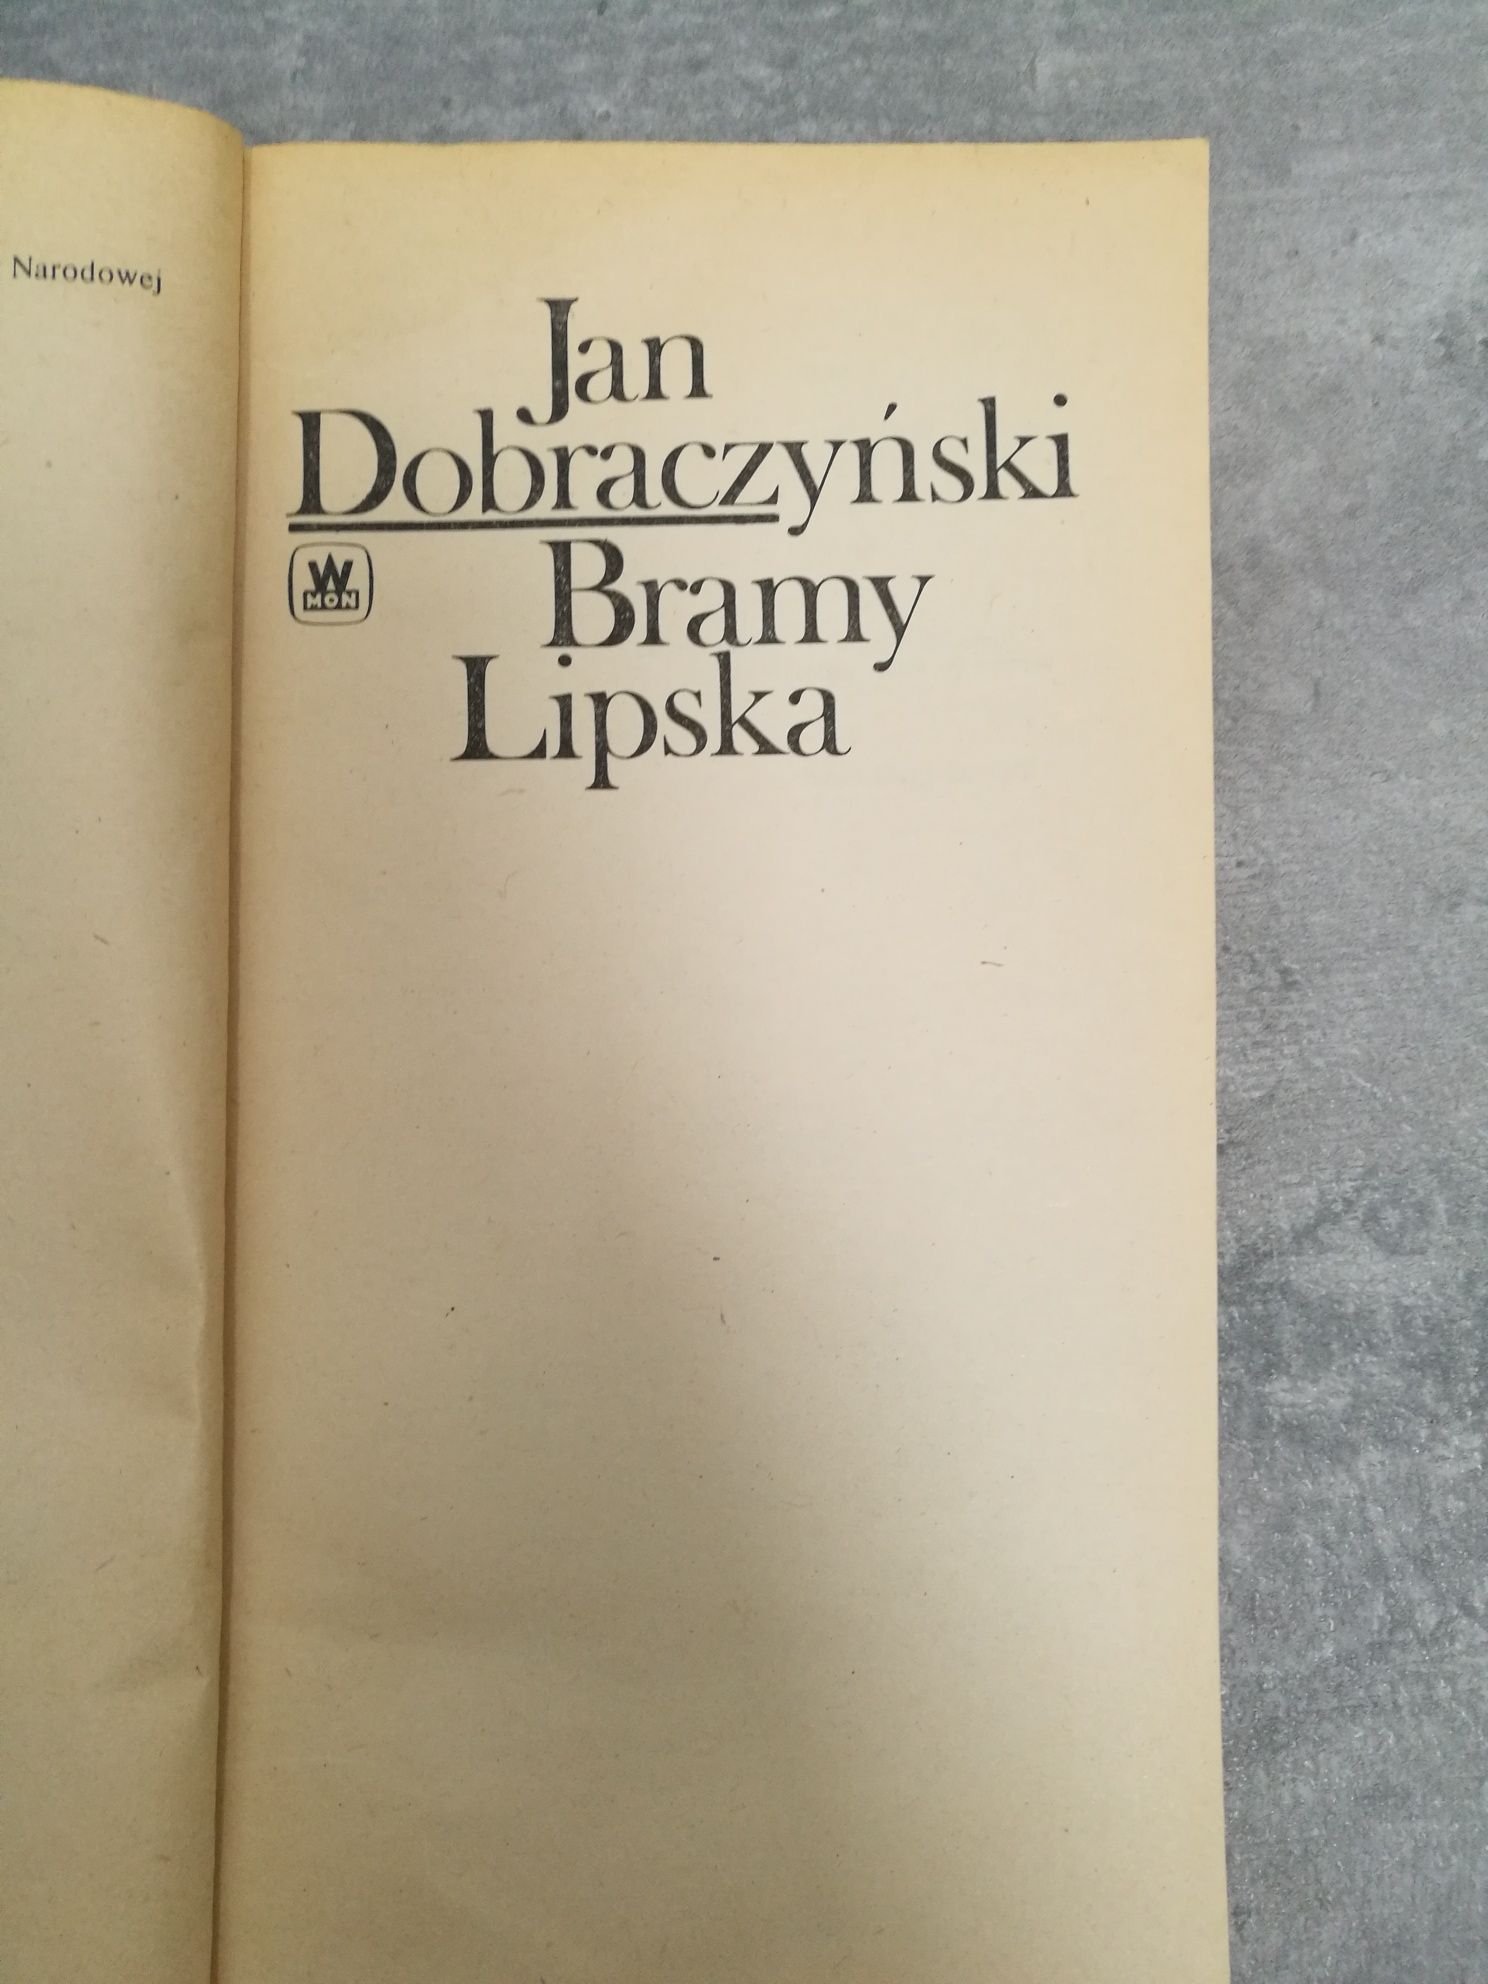 Bramy Lipska, książka Jana Dobraczyńskiego